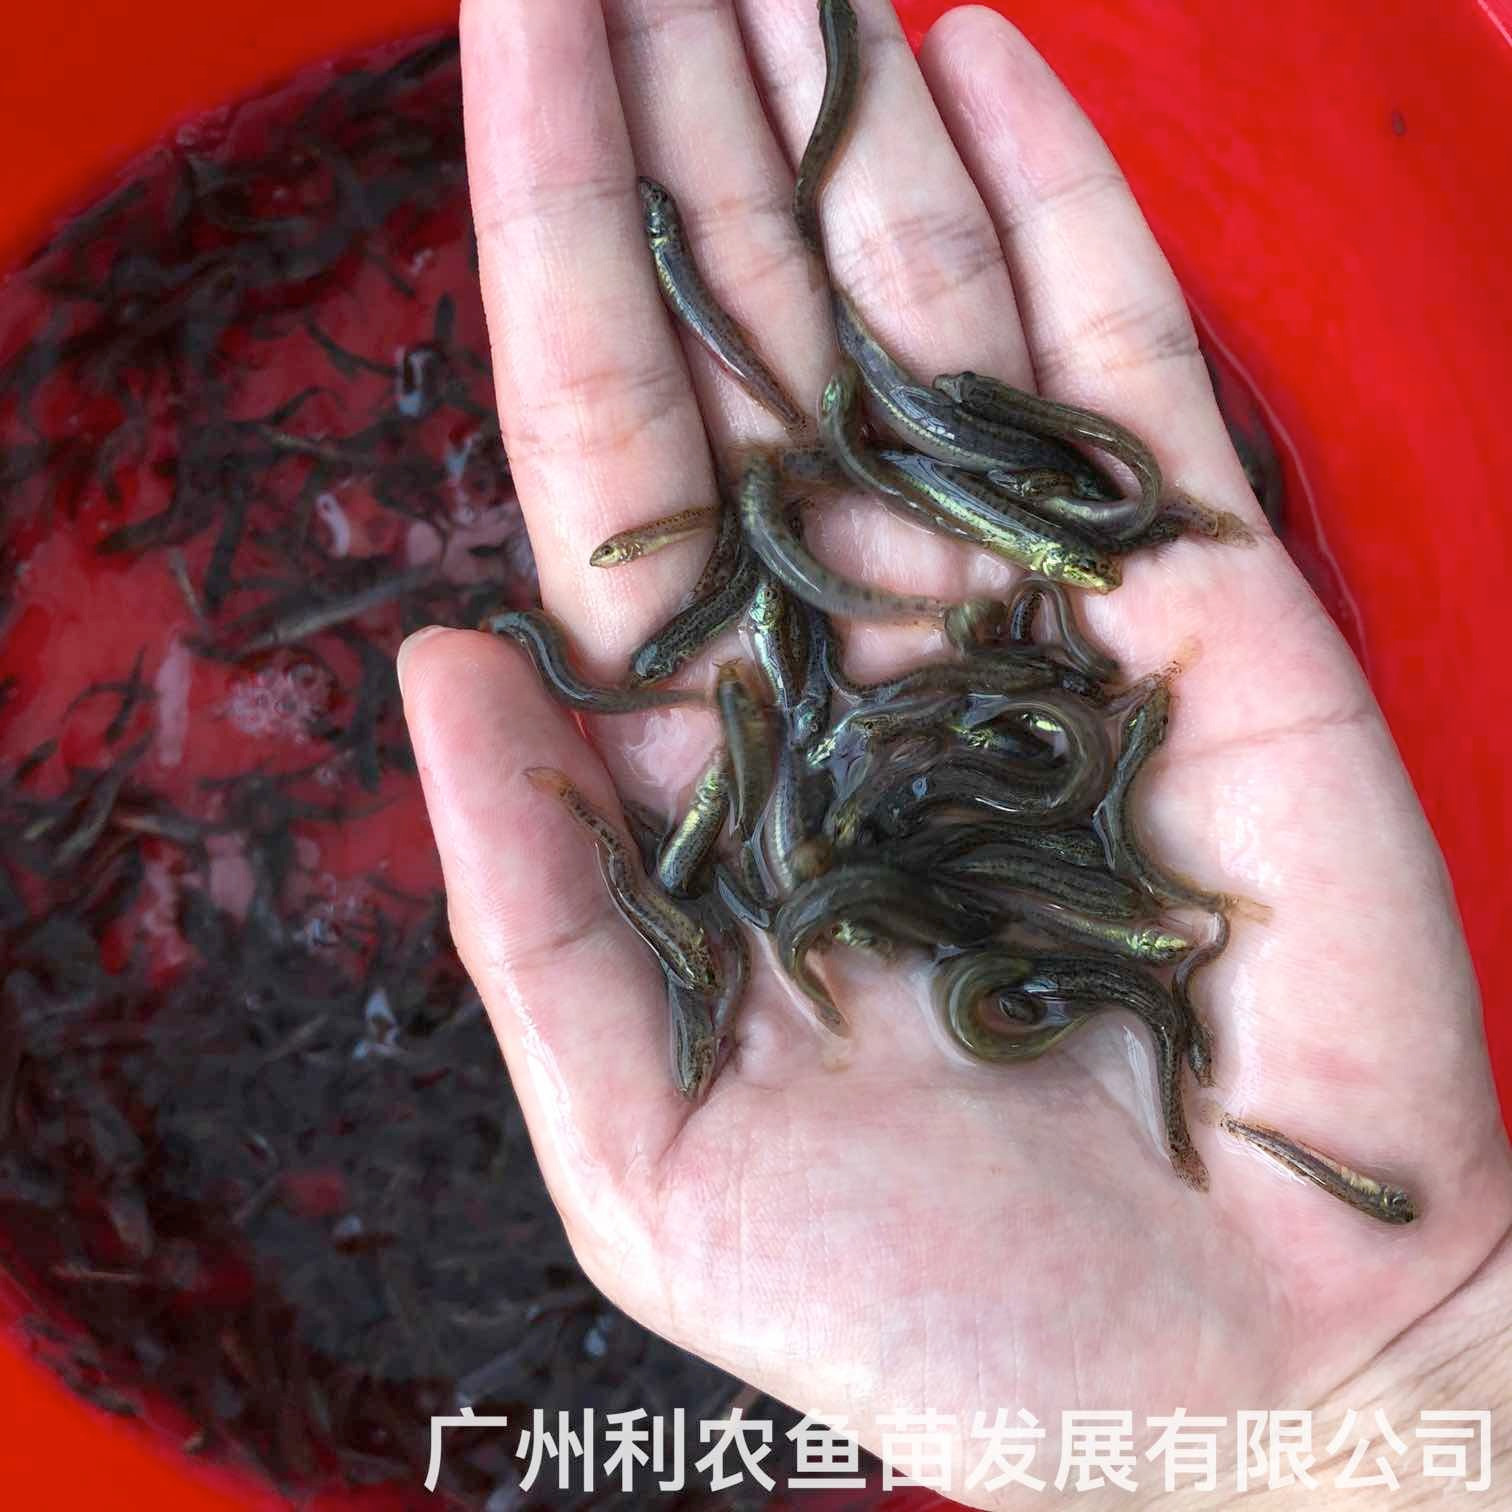 广西钟山台湾泥鳅苗出售广西兴业泥鳅鱼苗批发